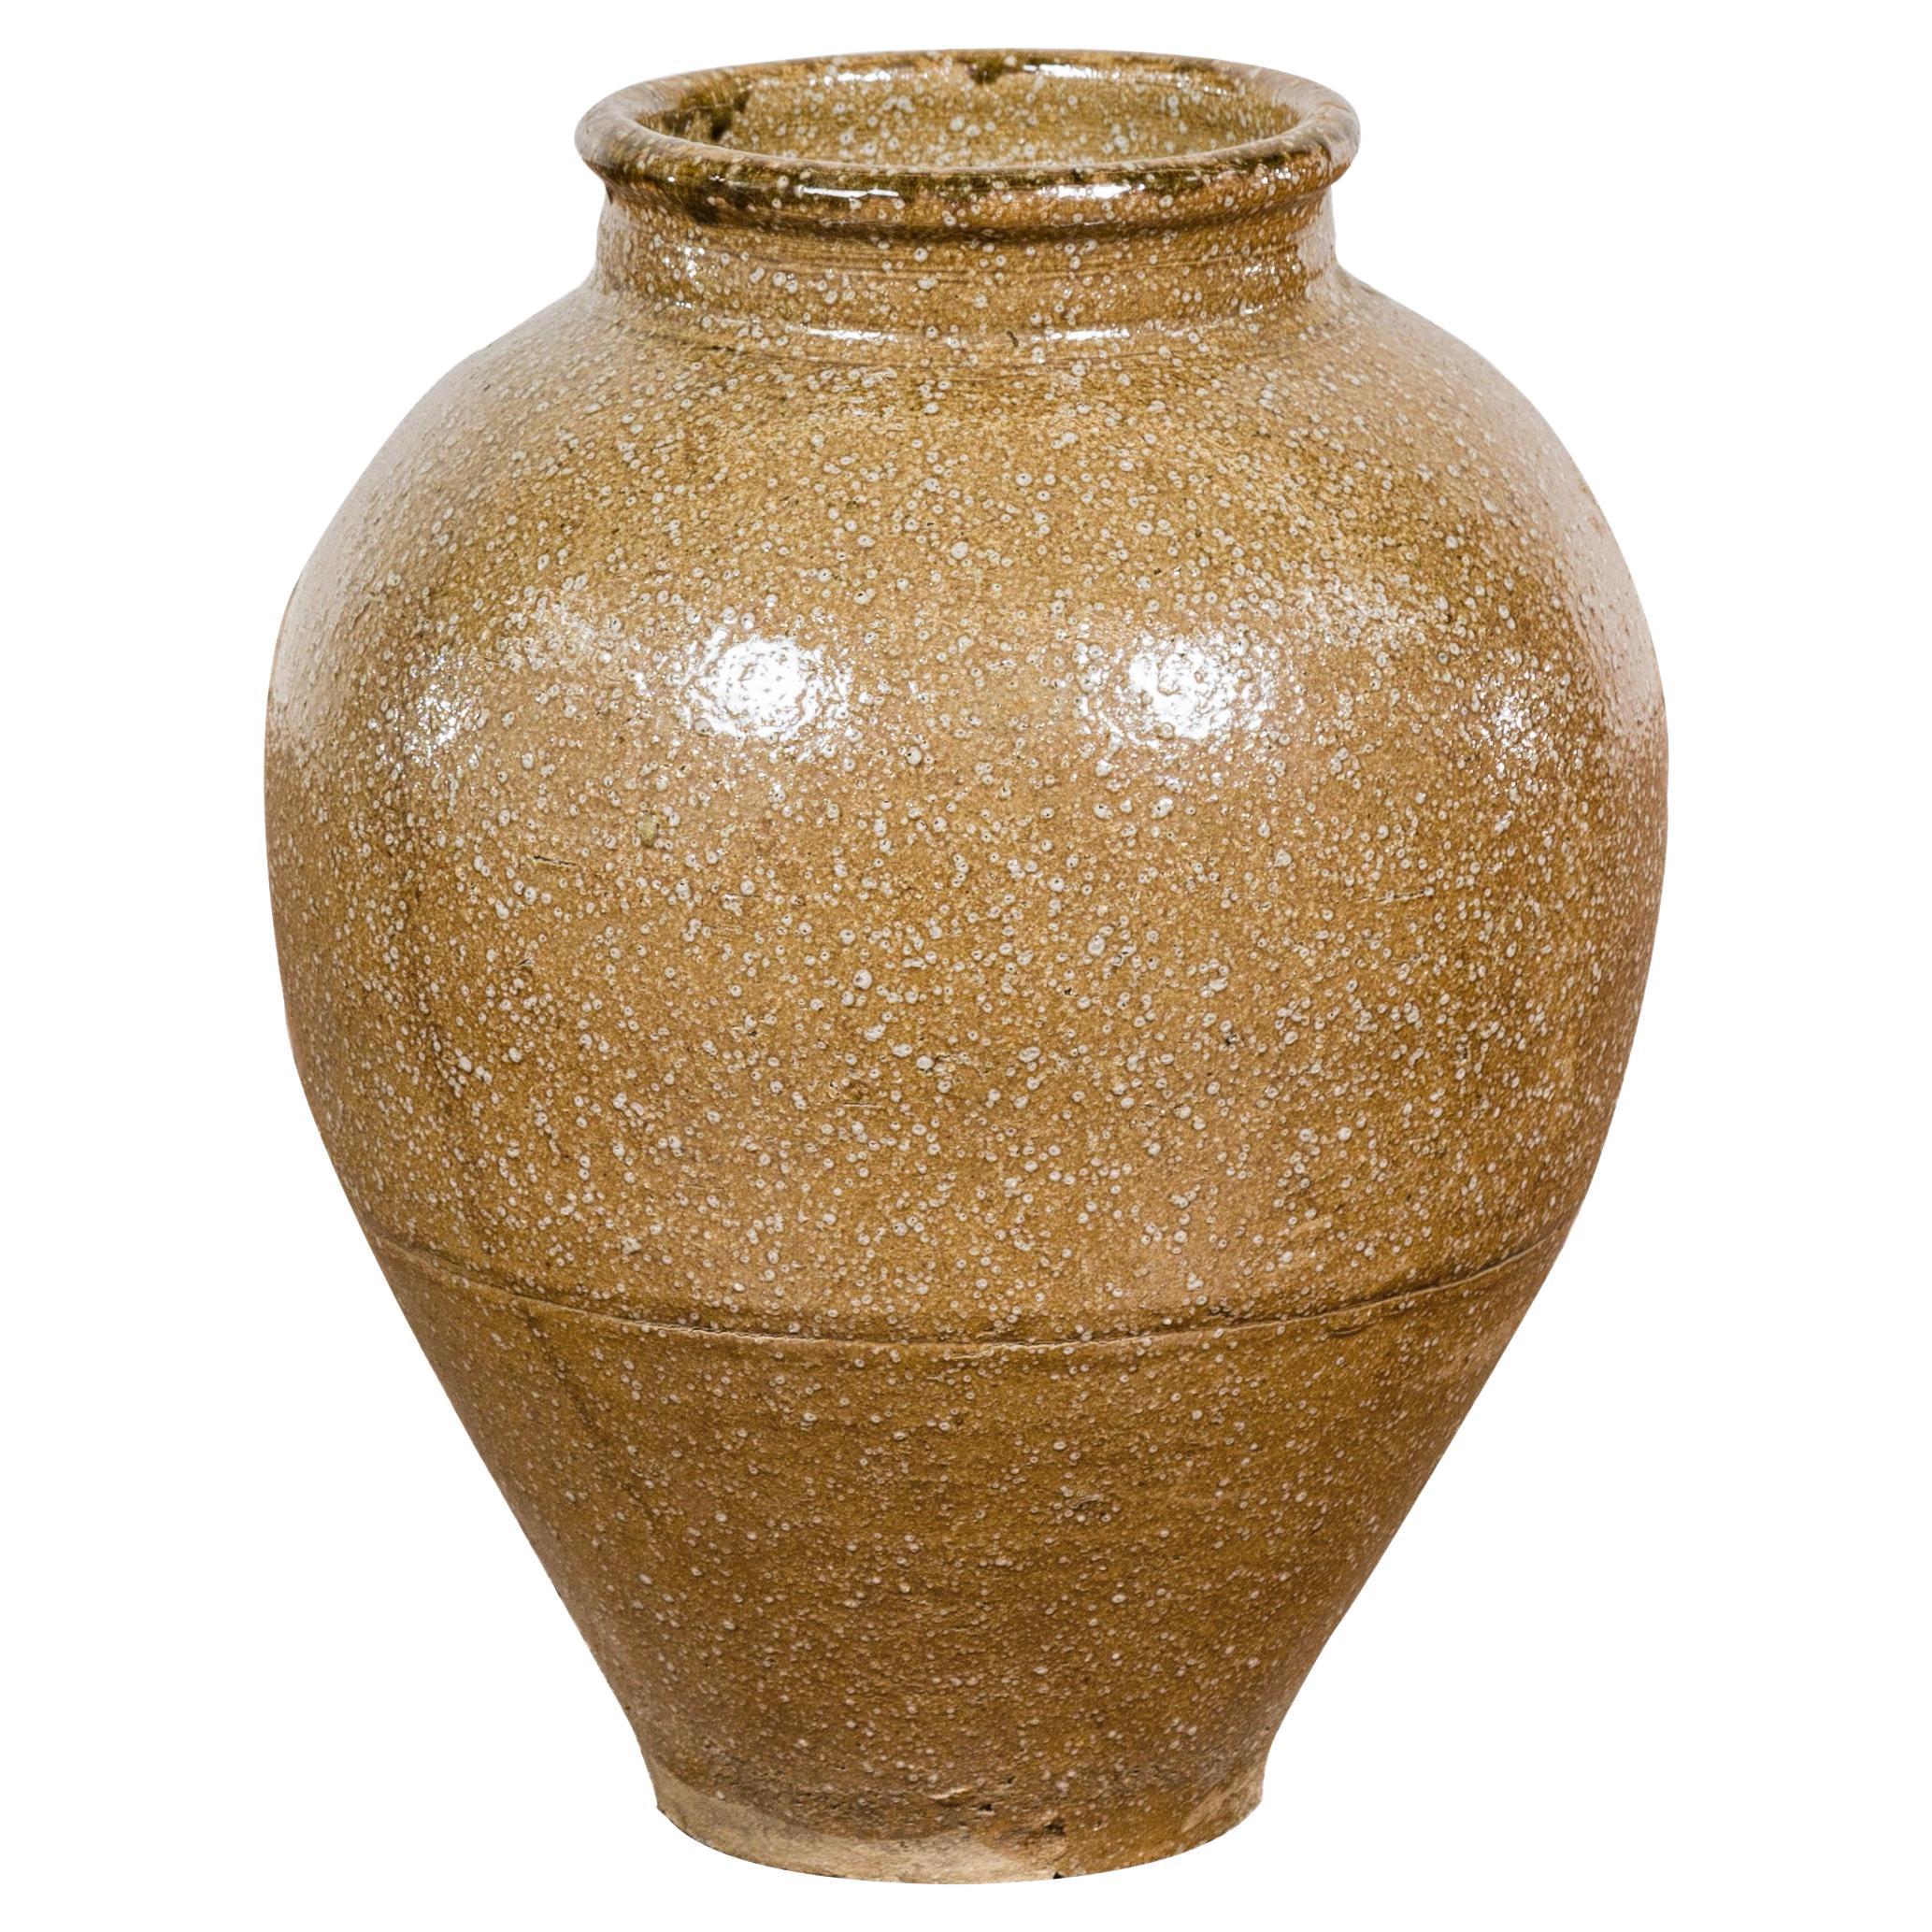 Japanische Vase aus der Taishō-Periode mit zweifarbiger Sandglasur und strukturierter Oberfläche, um 1900